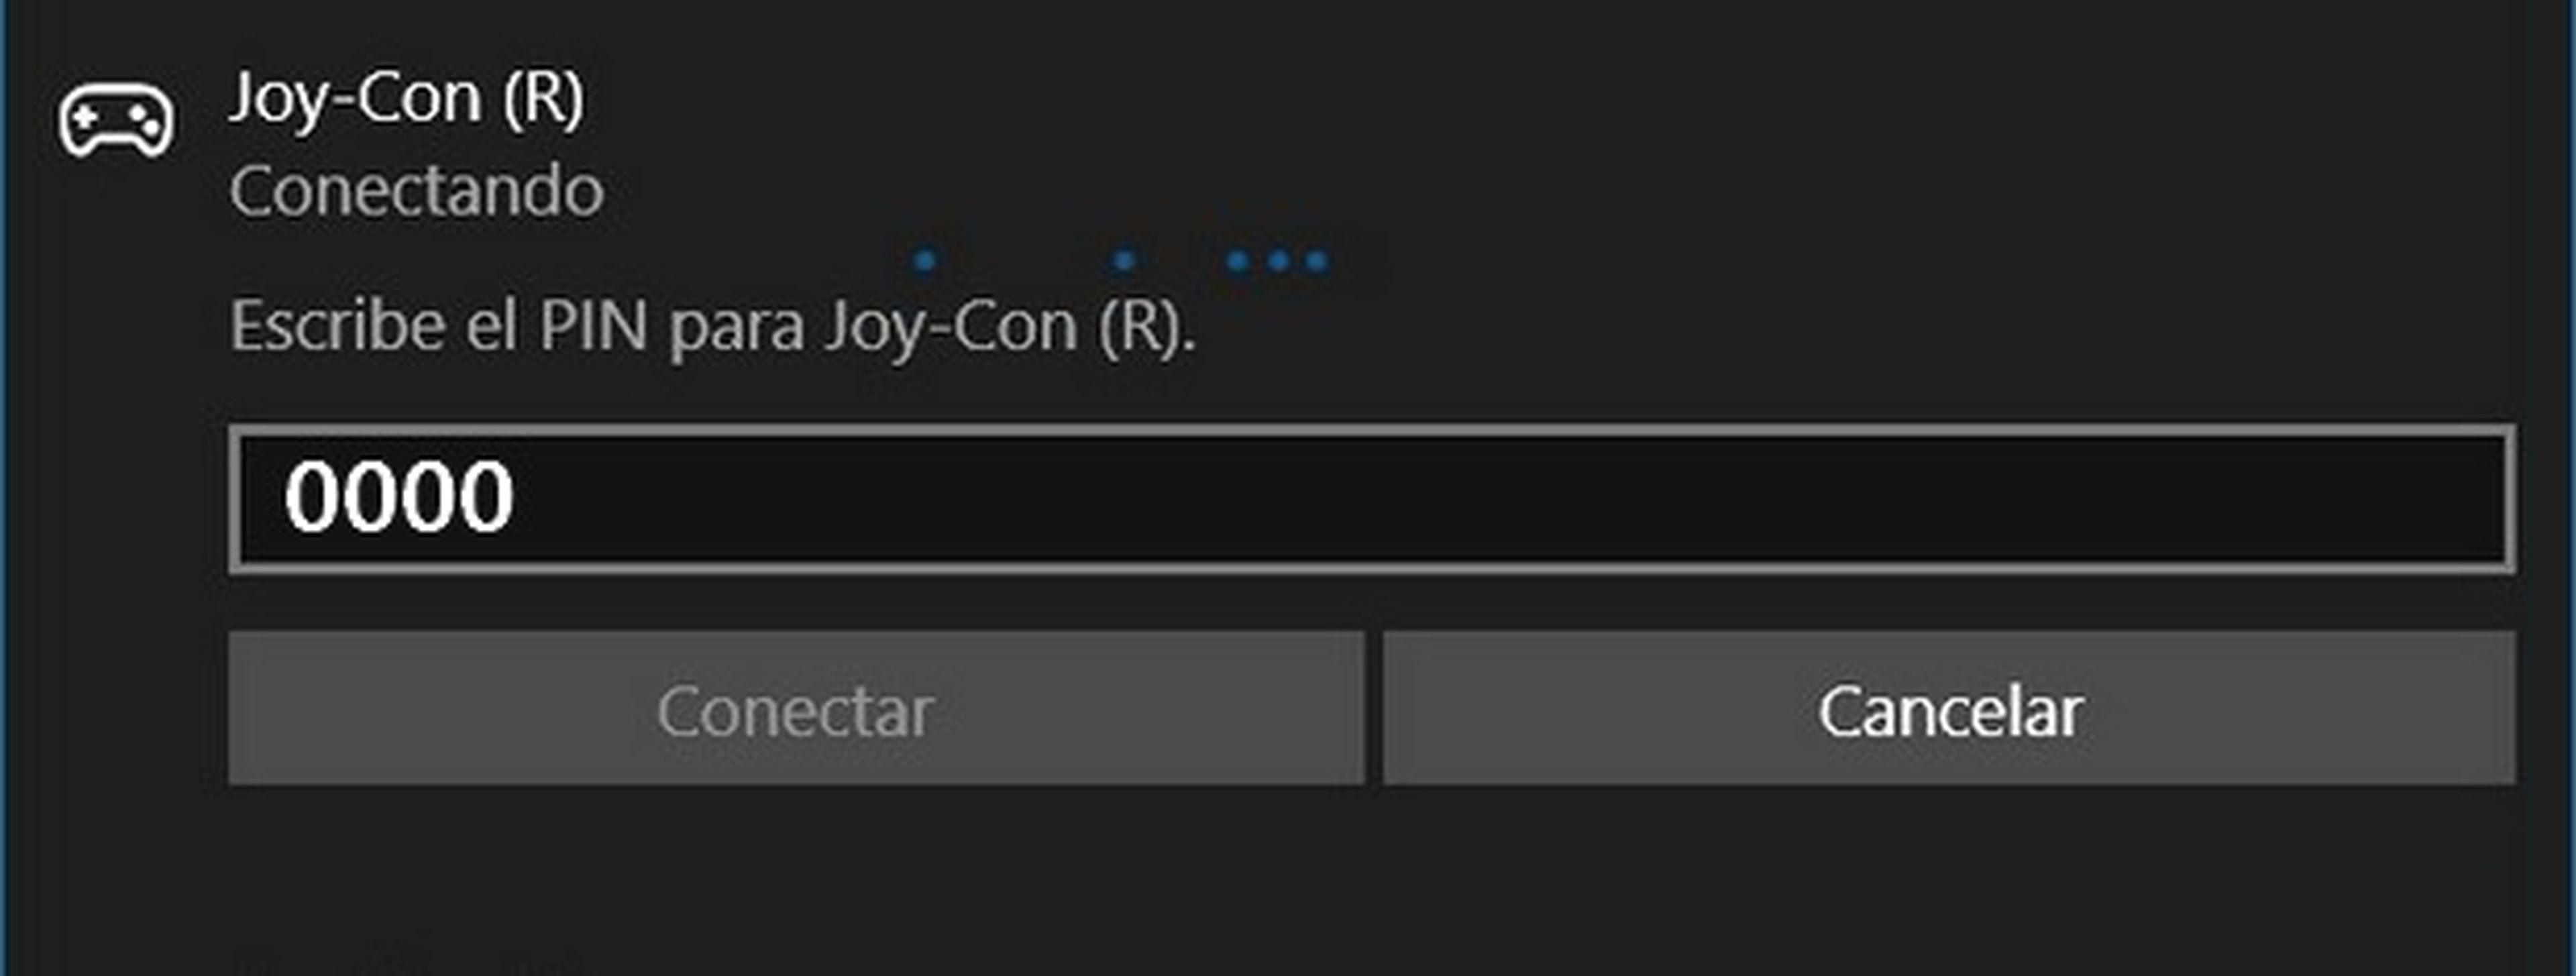 Cómo usar los joy-co en PC como un solo gamepad